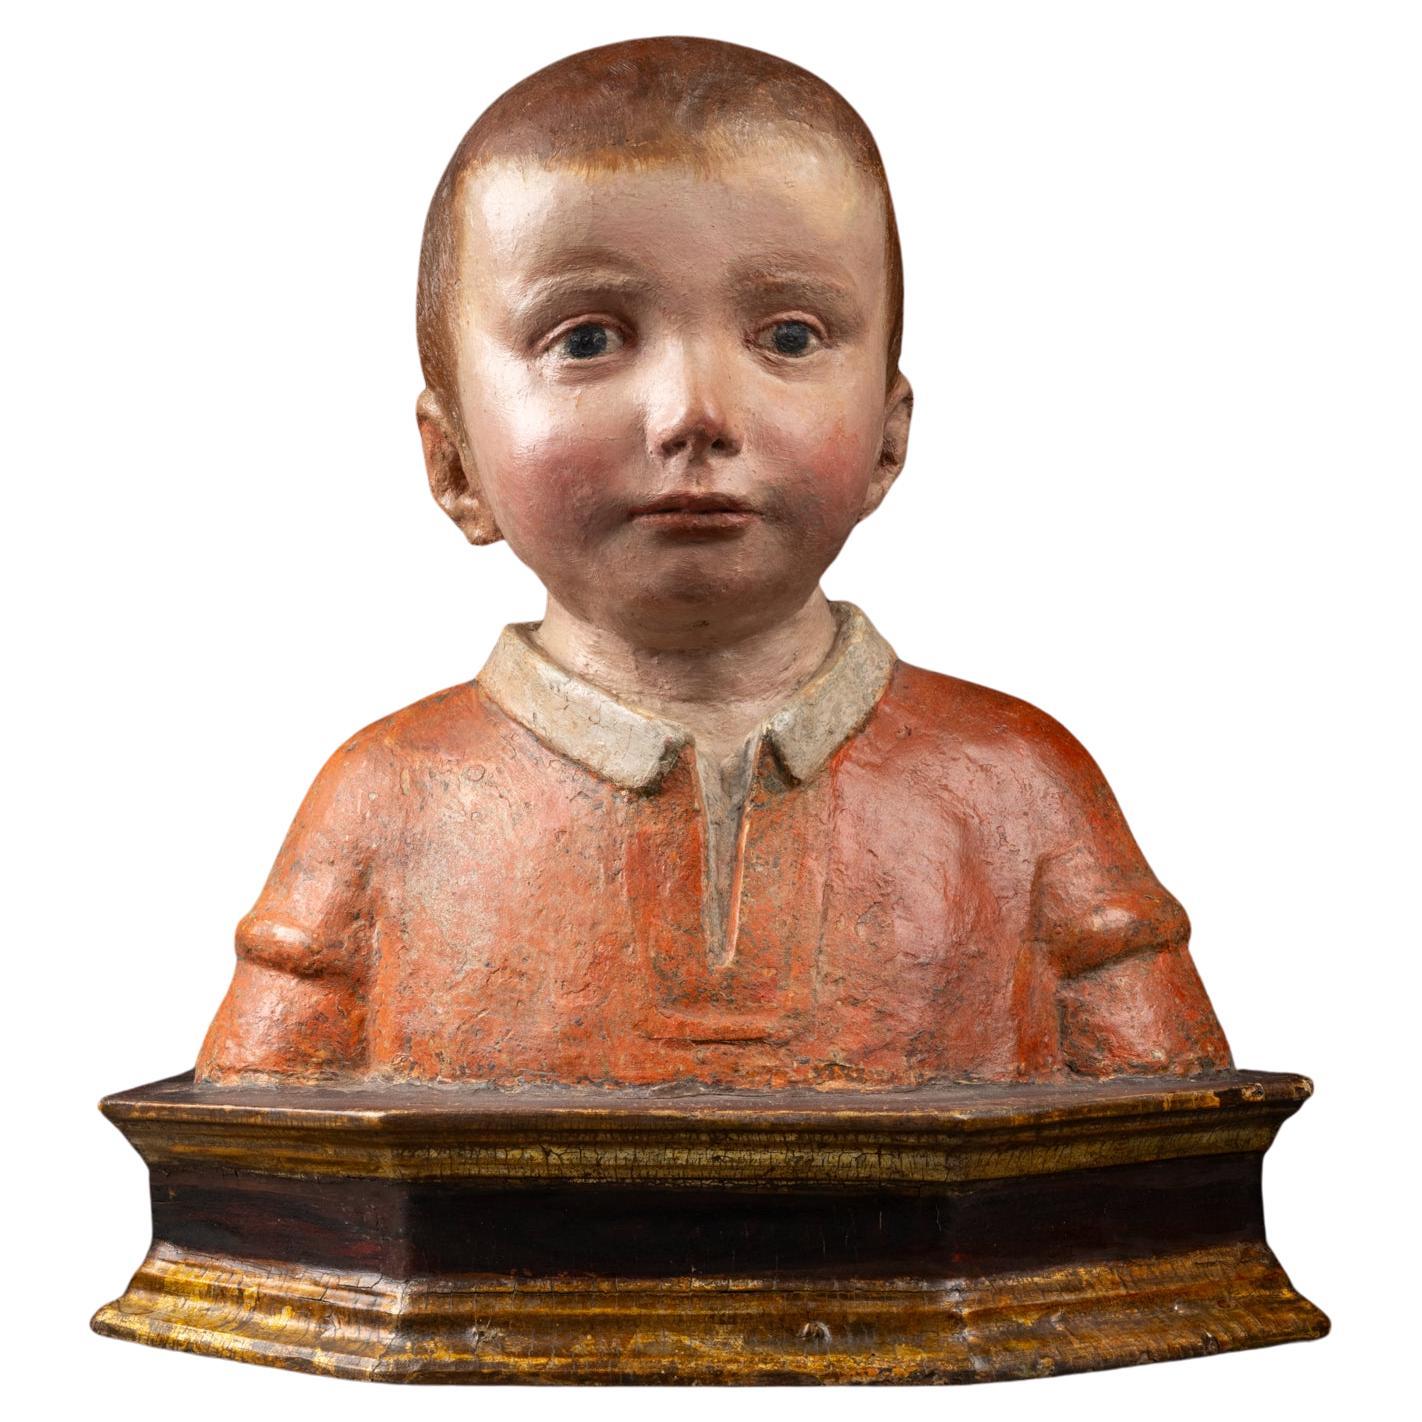 Antonio Rossellino (Settignano 1427 - Firenze 1479) - Büste eines jungen Jungen